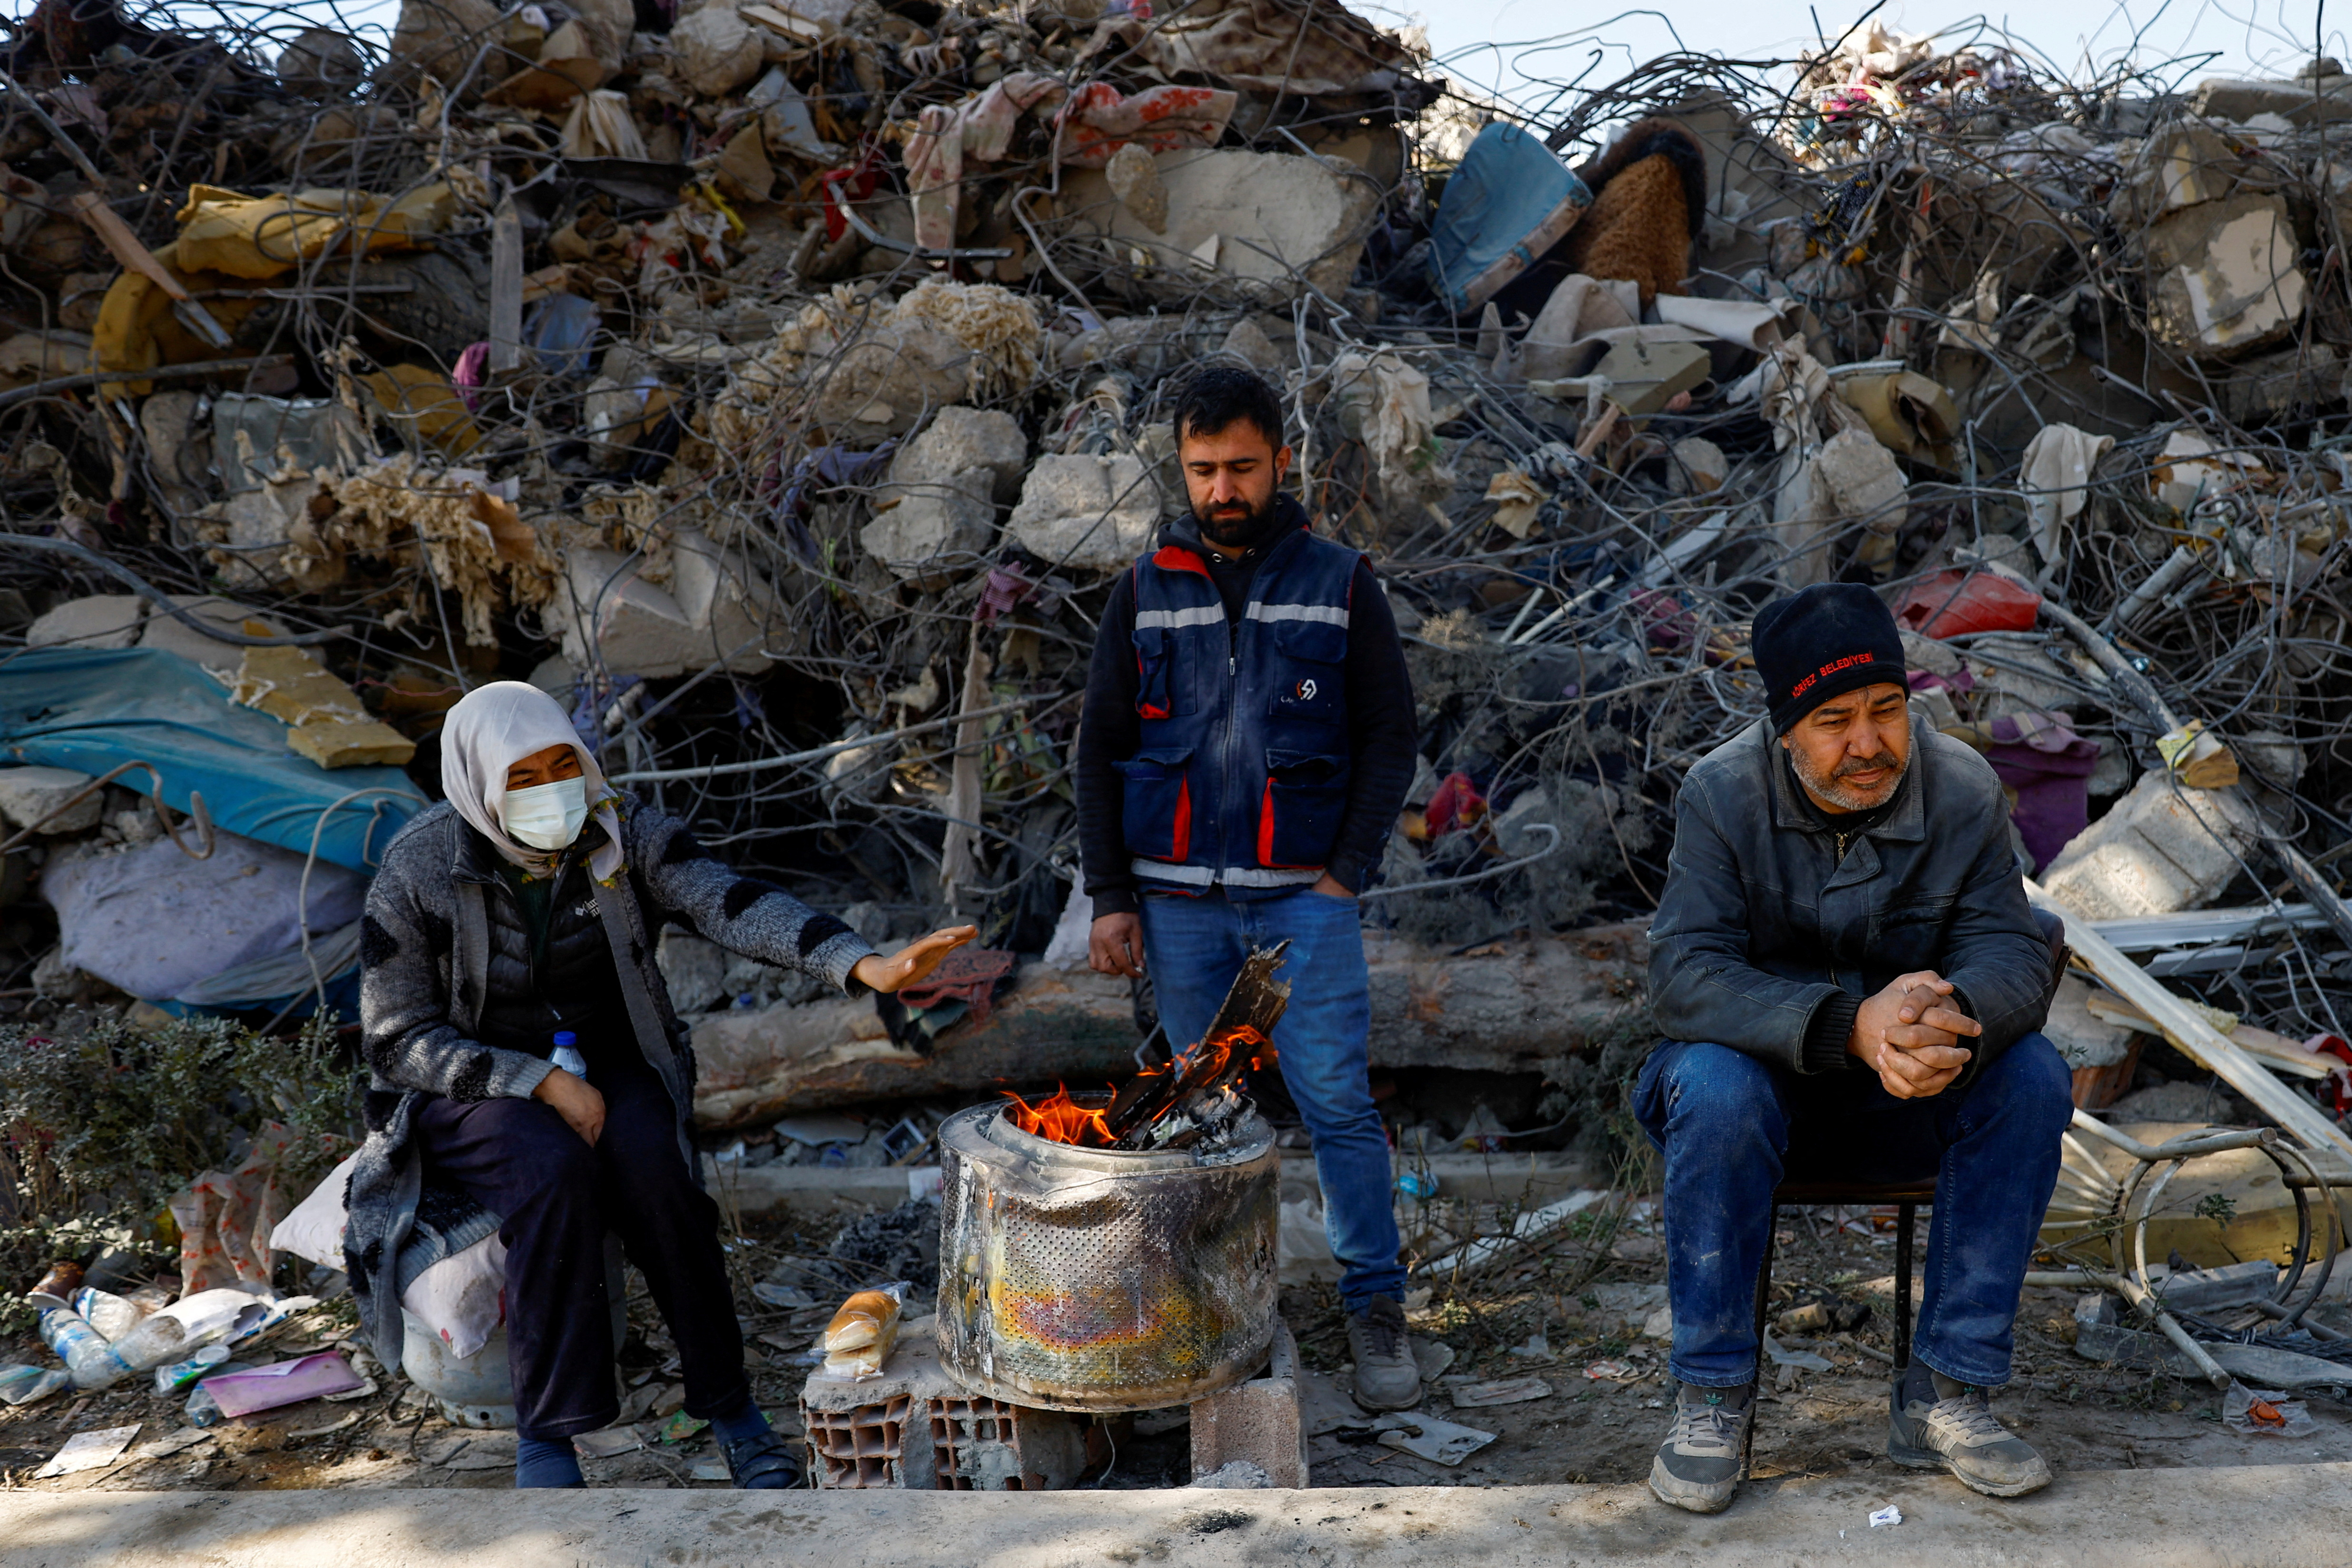 La gente se mantiene caliente junto a un fuego cerca de los escombros, tras el terremoto mortal en Kahramanmaras, Turquía 14 de febrero 2023. REUTERS/Suhaib Salem